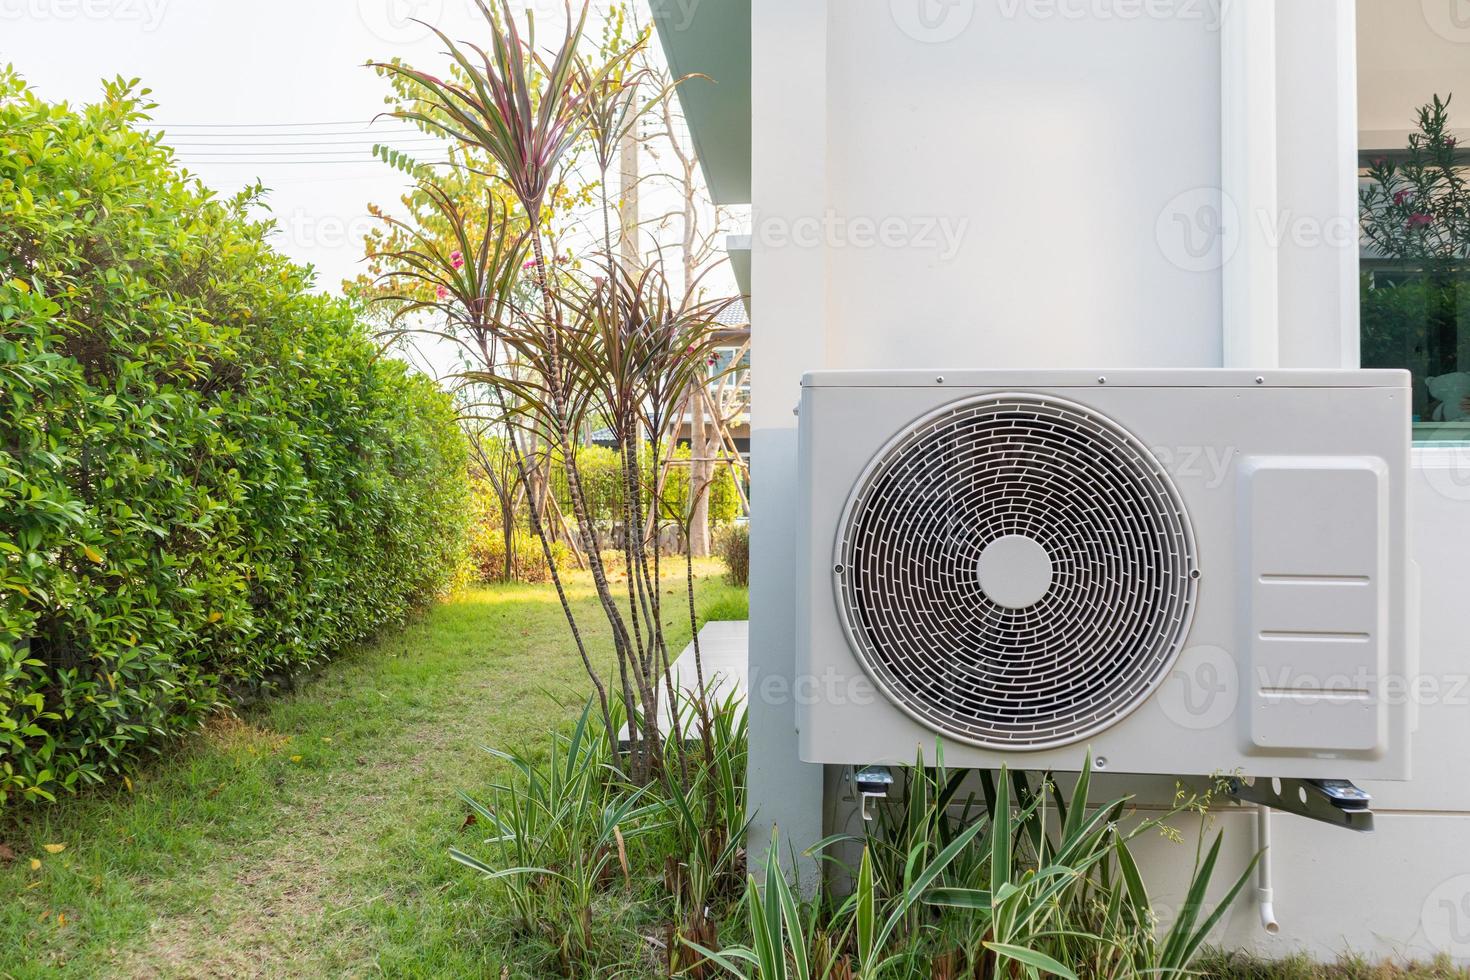 luftkonditionering utomhusenhet kompressor installera utanför huset foto